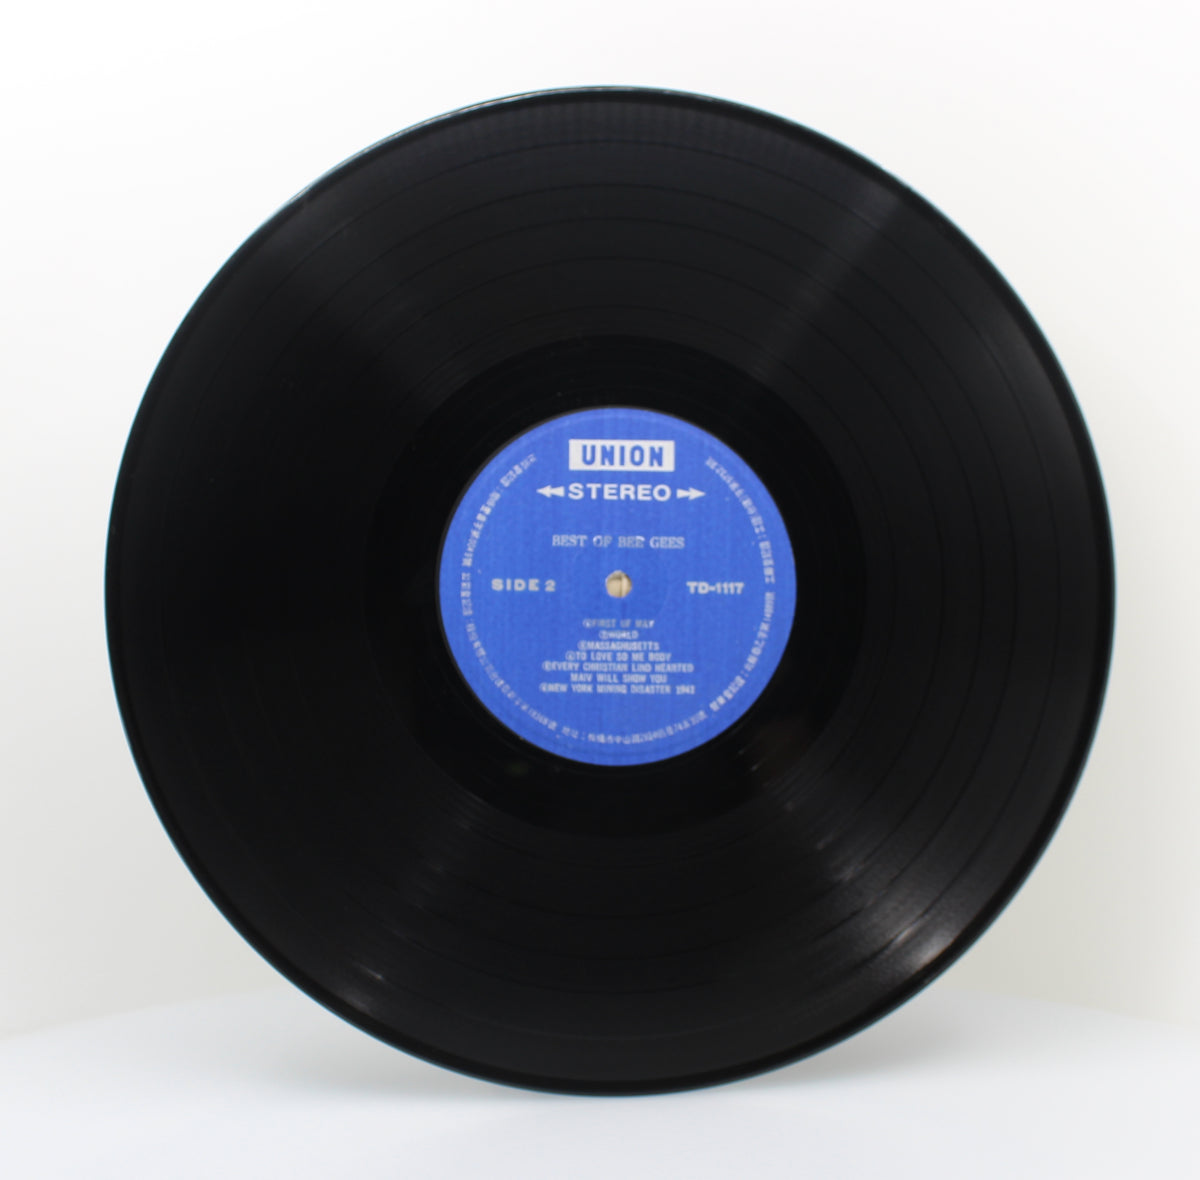 Bee Gees - Best Of, Vinyl (33⅓ rpm), Taiwan